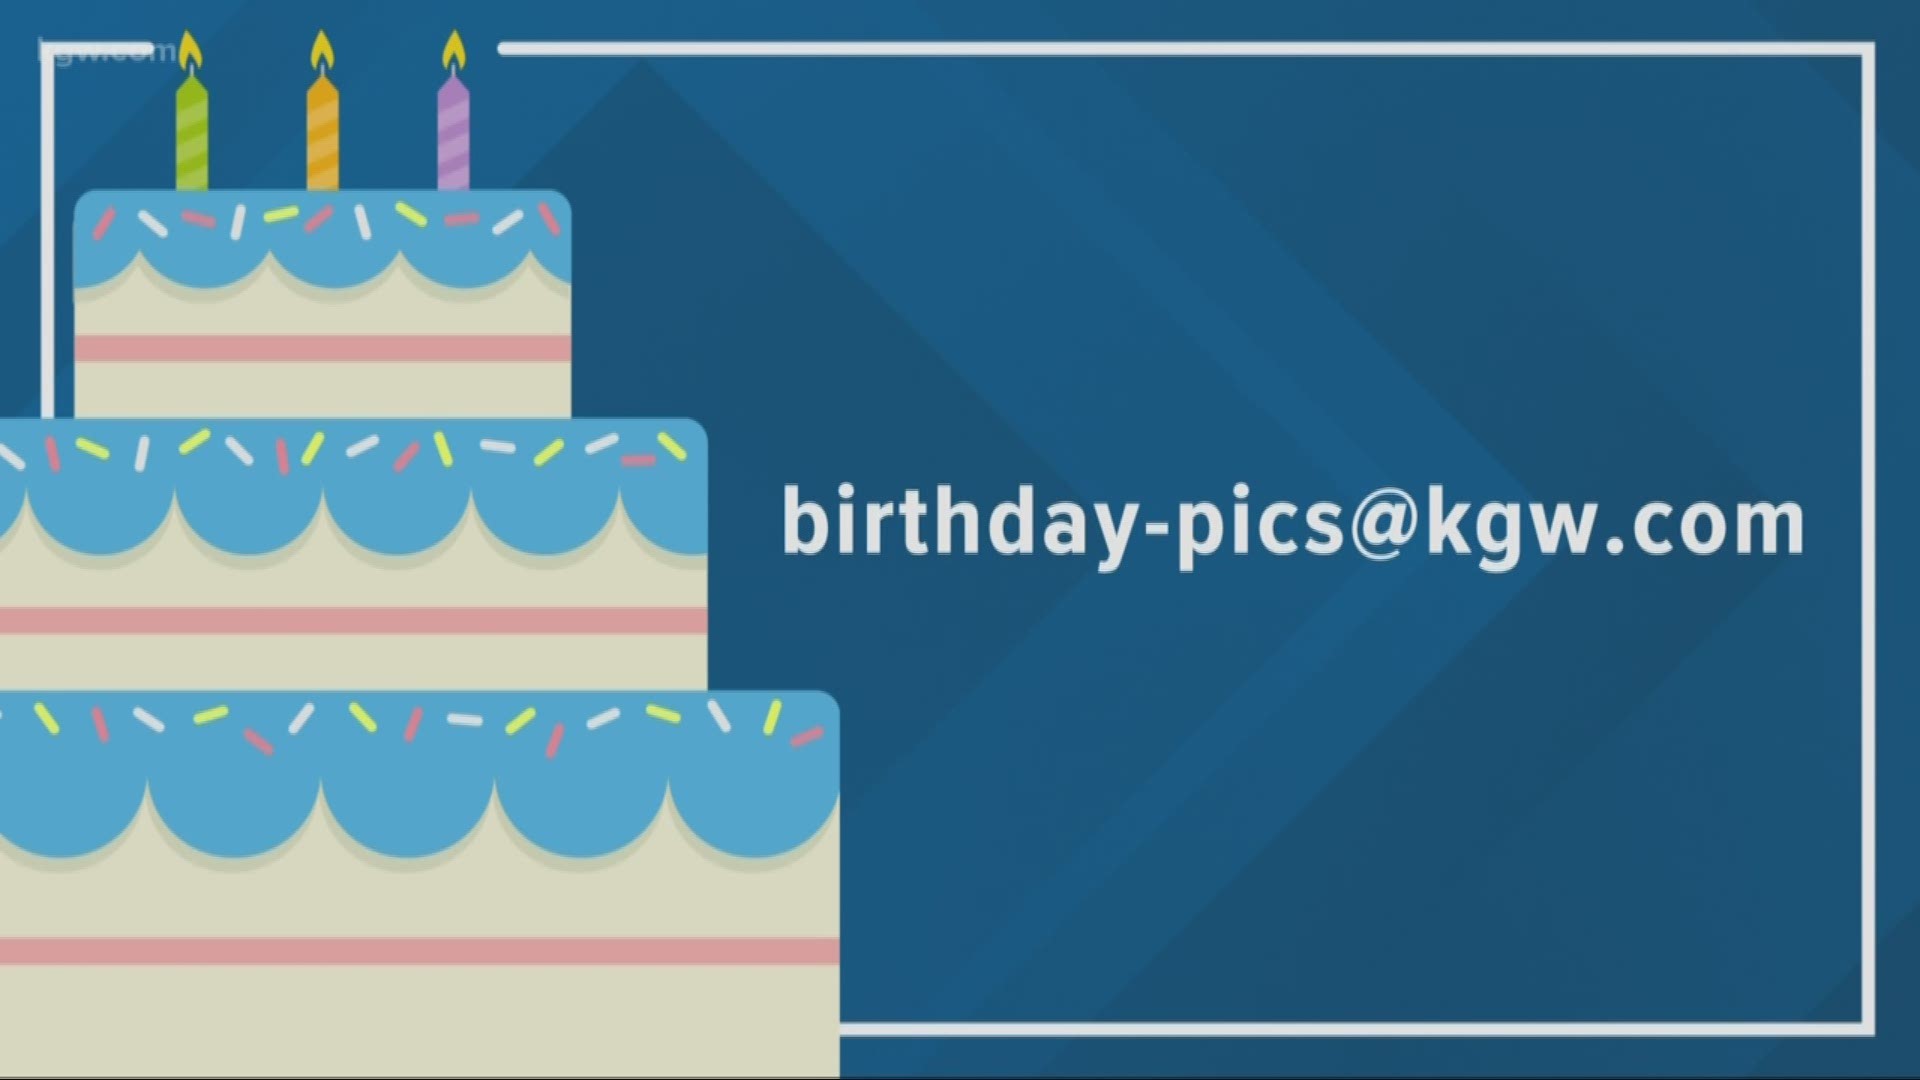 KGW viewer birthdays: 9-10-19